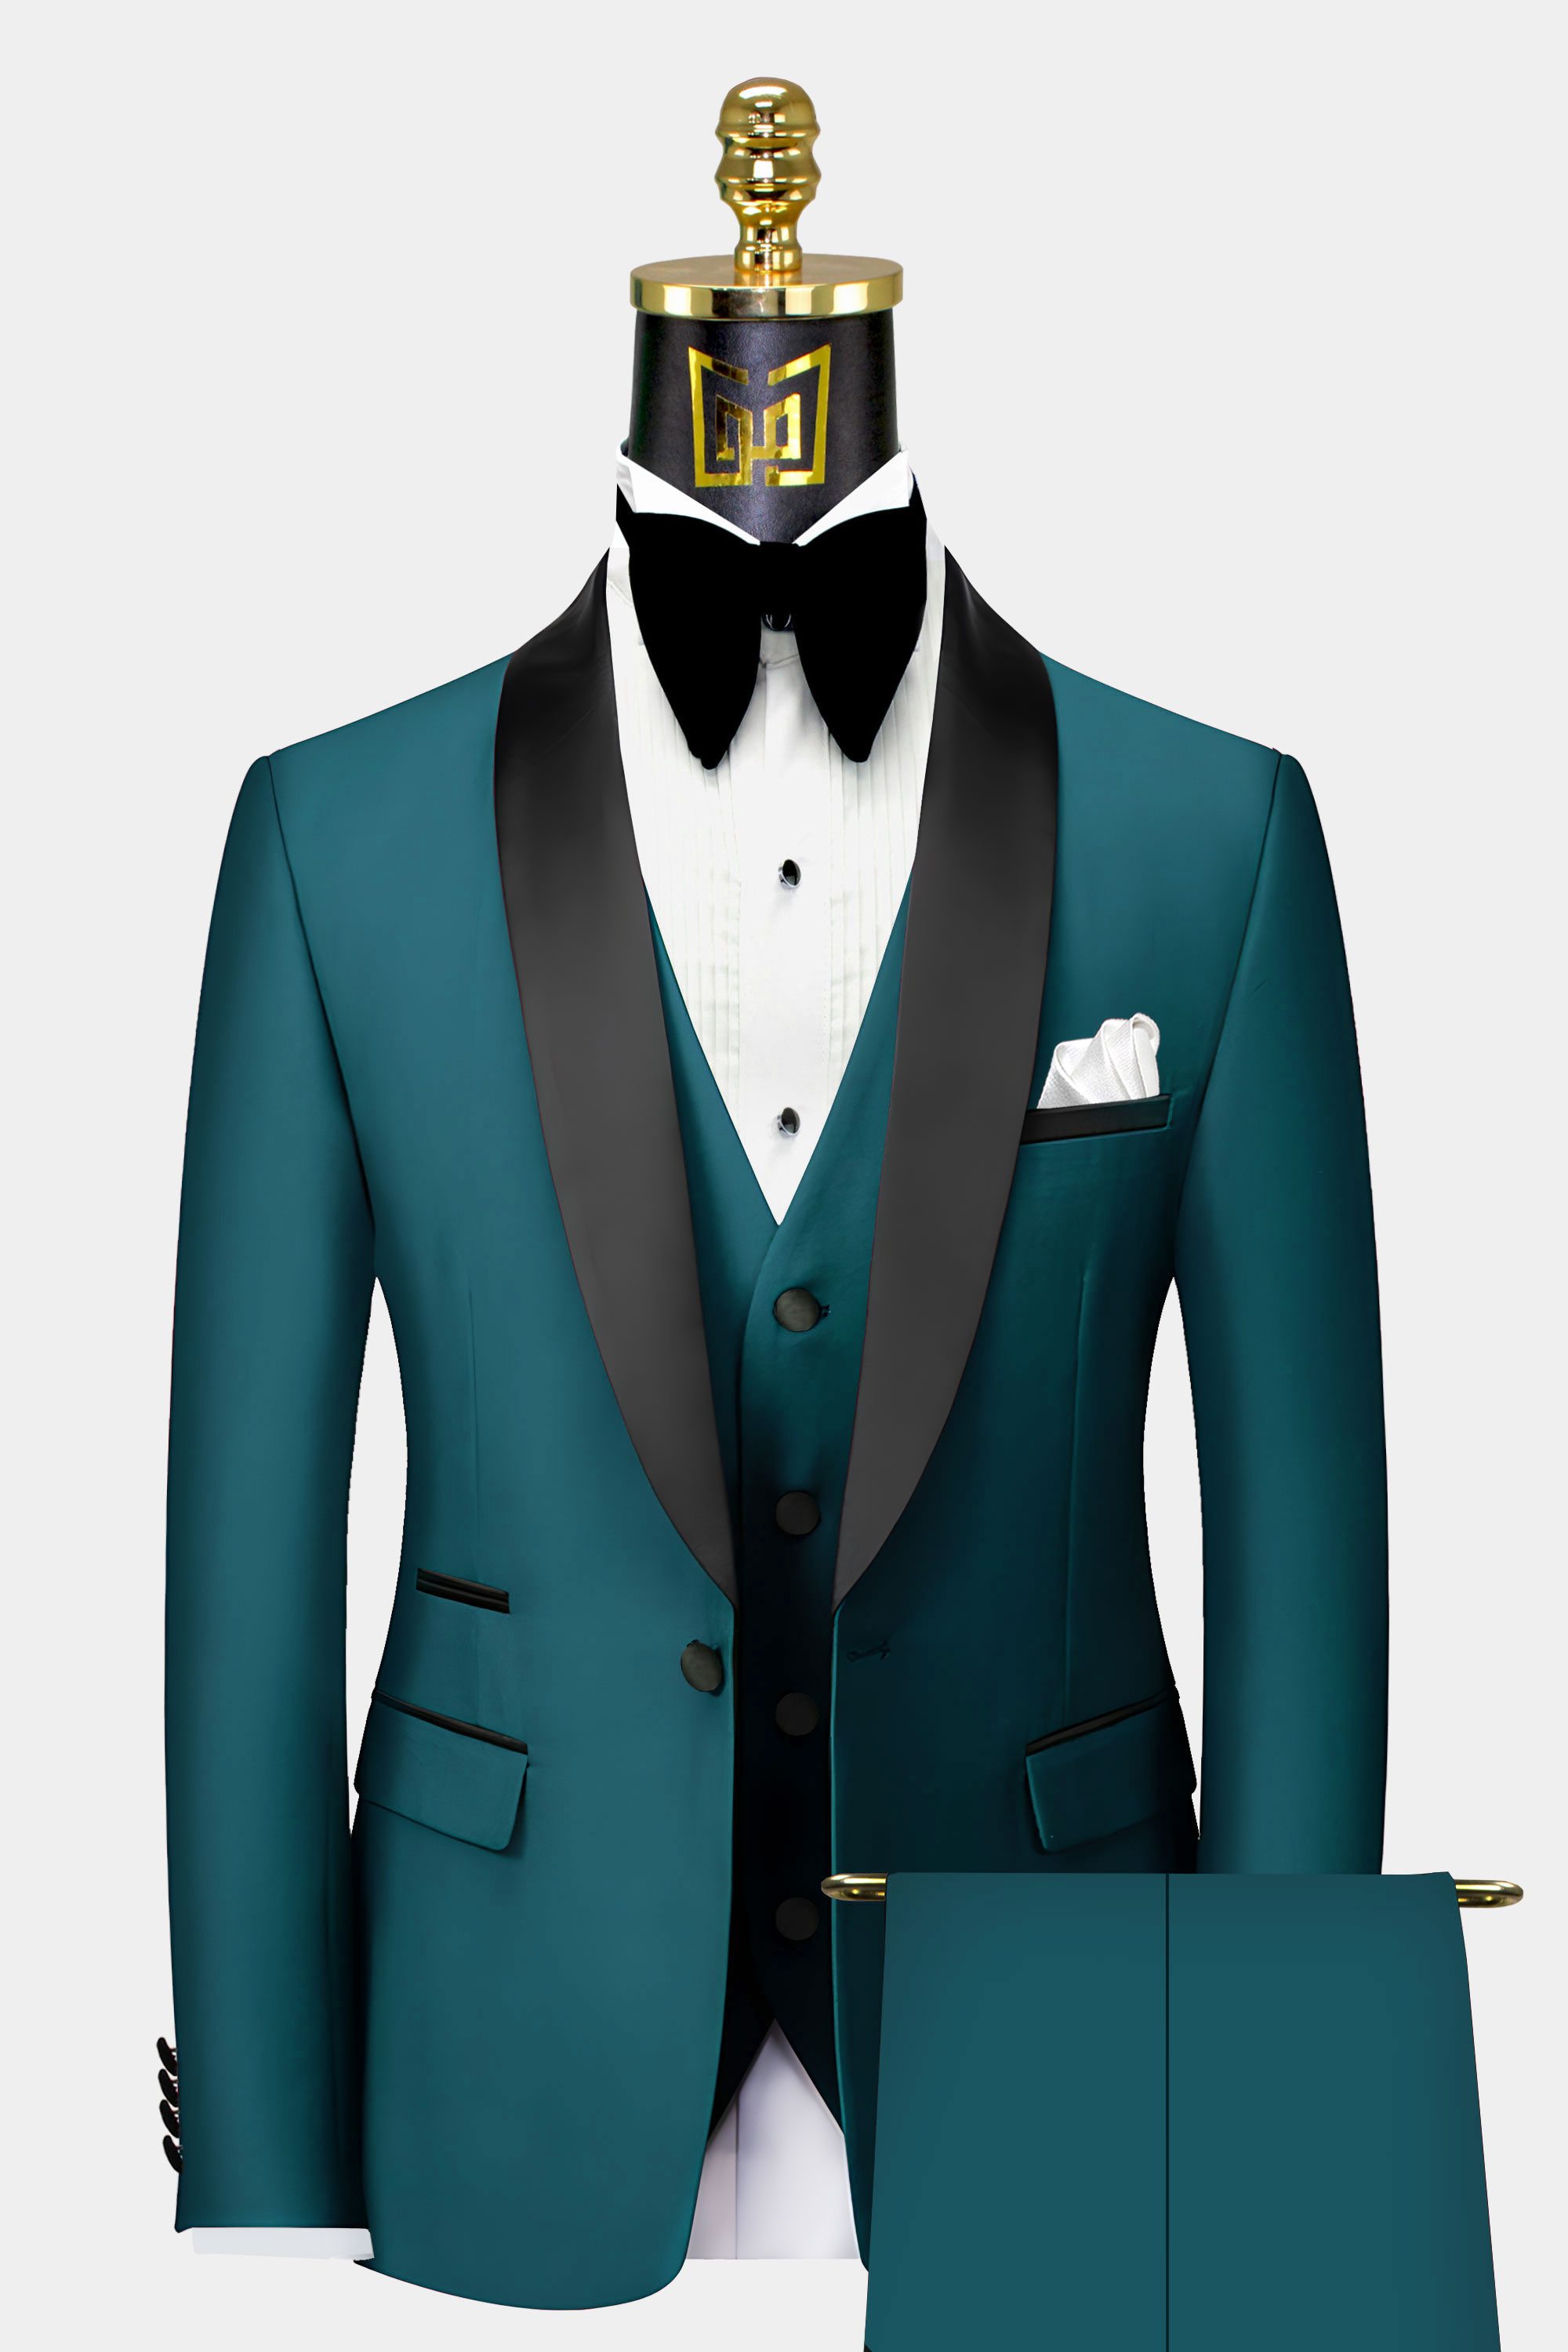 Mens-Teal-Tuxedo-Groom-Wedding-Prom-Suit-from-Gentlemansguru.com